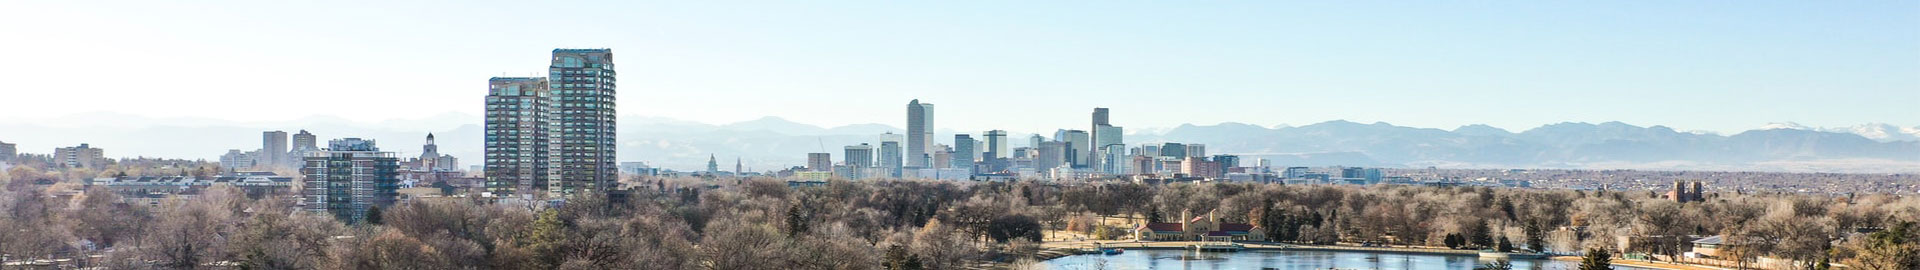 City skyline of Denver Colorado